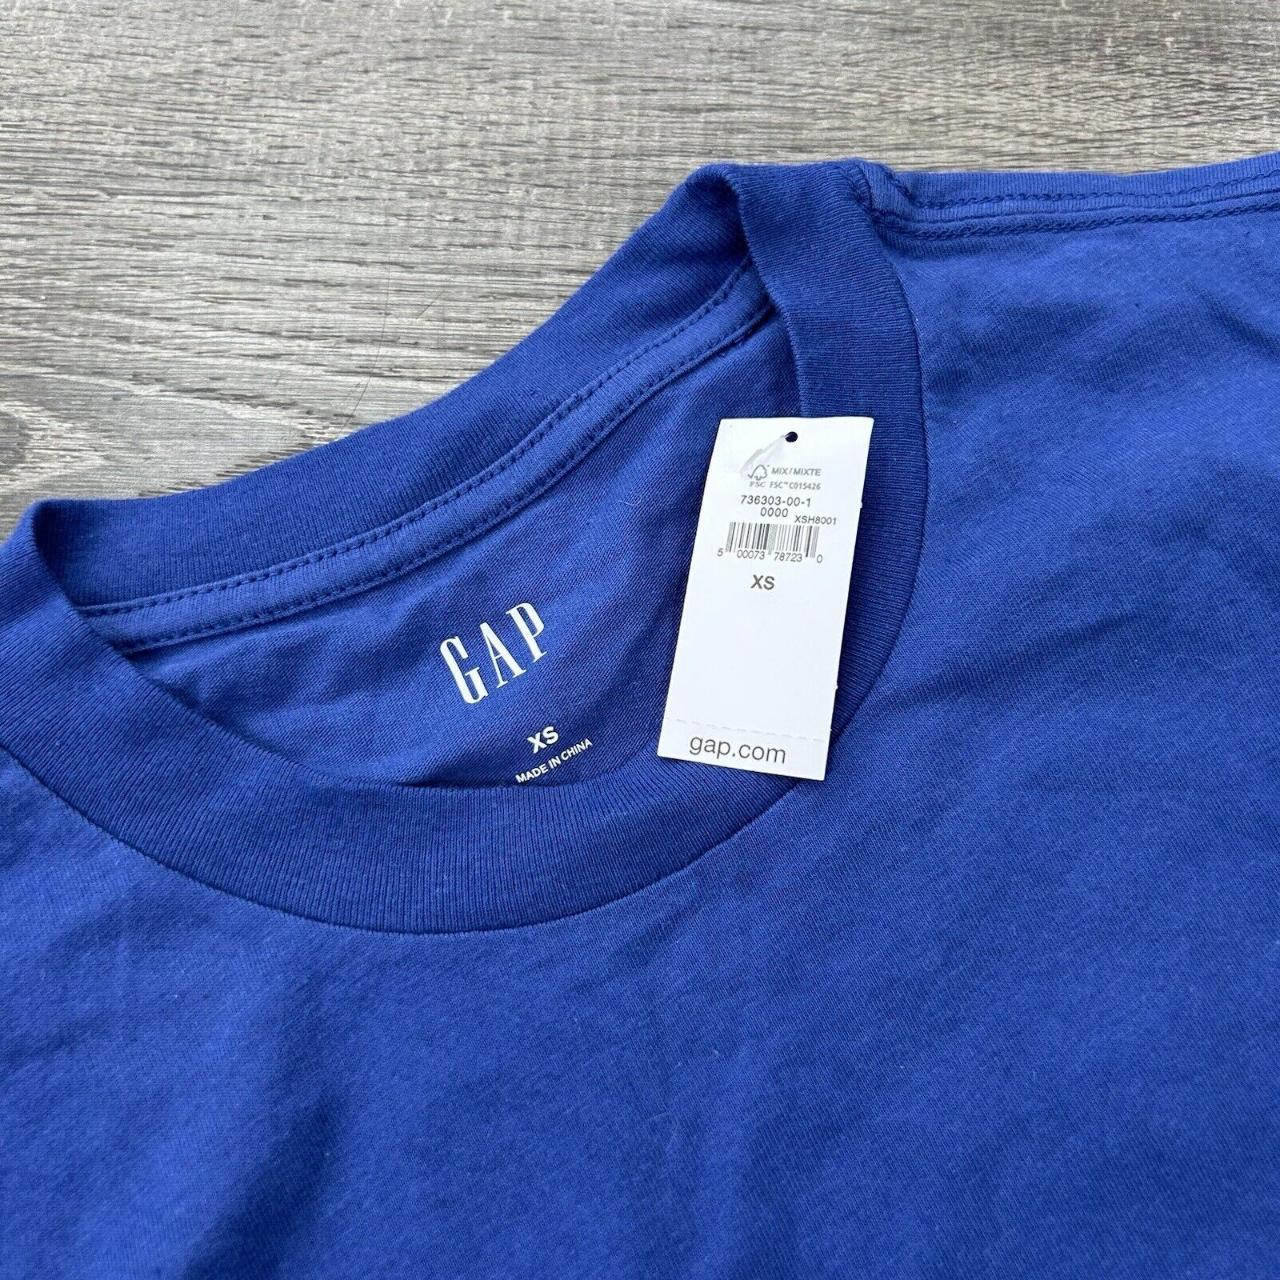 Gap Men's Navy and Blue T-shirt | Depop